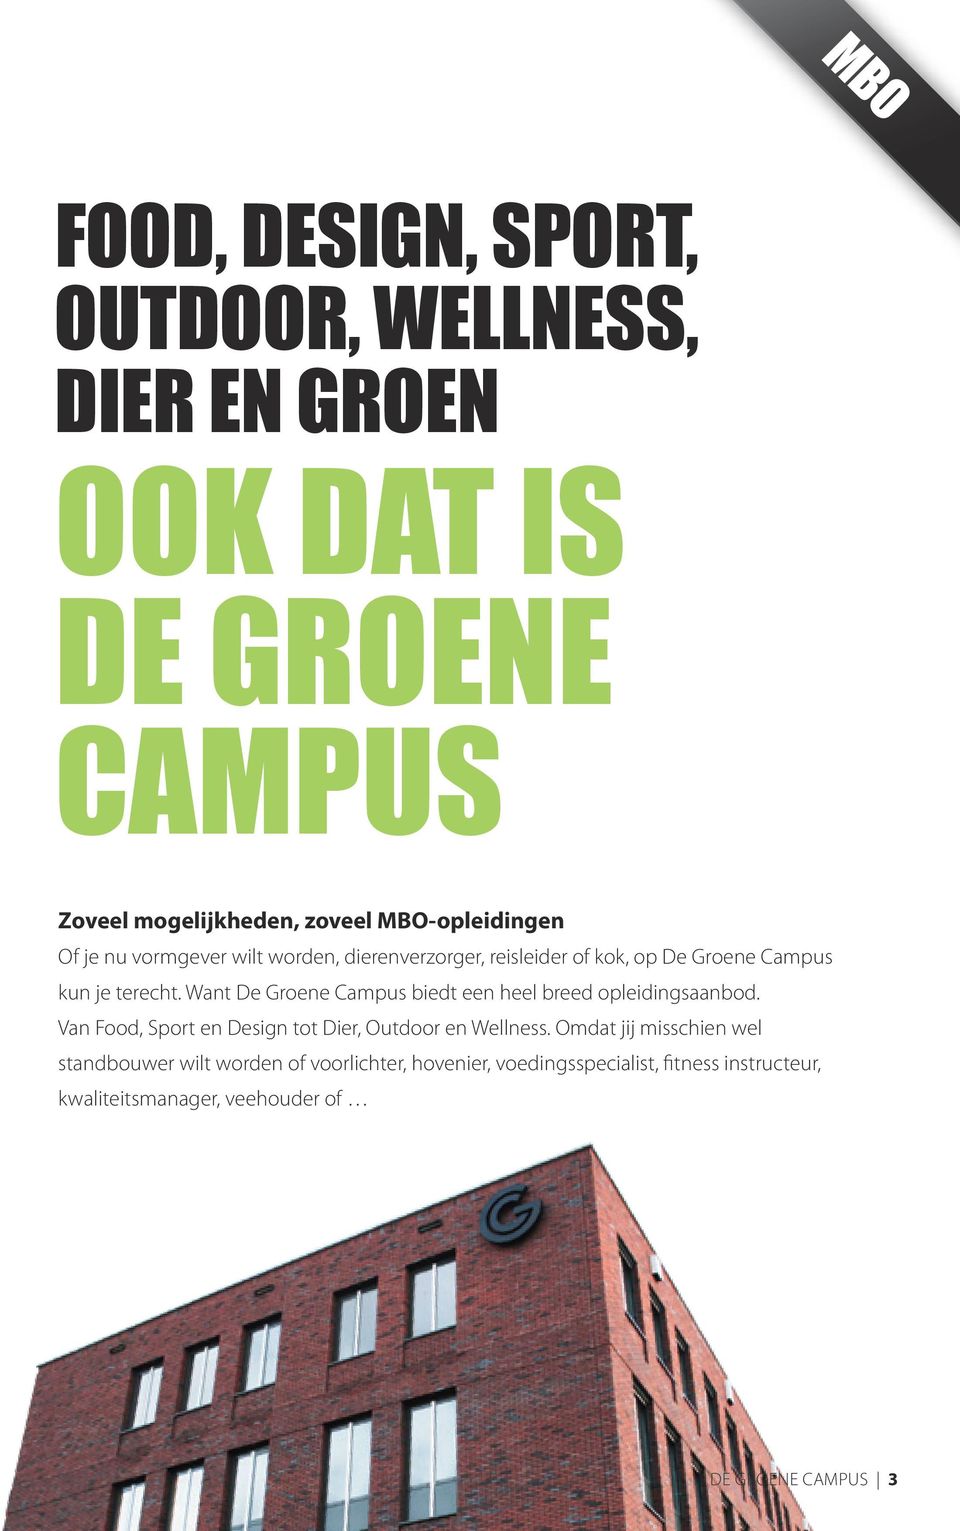 Want De Groene Campus biedt een heel breed opleidingsaanbod. Van Food, Sport en Design tot Dier, Outdoor en Wellness.